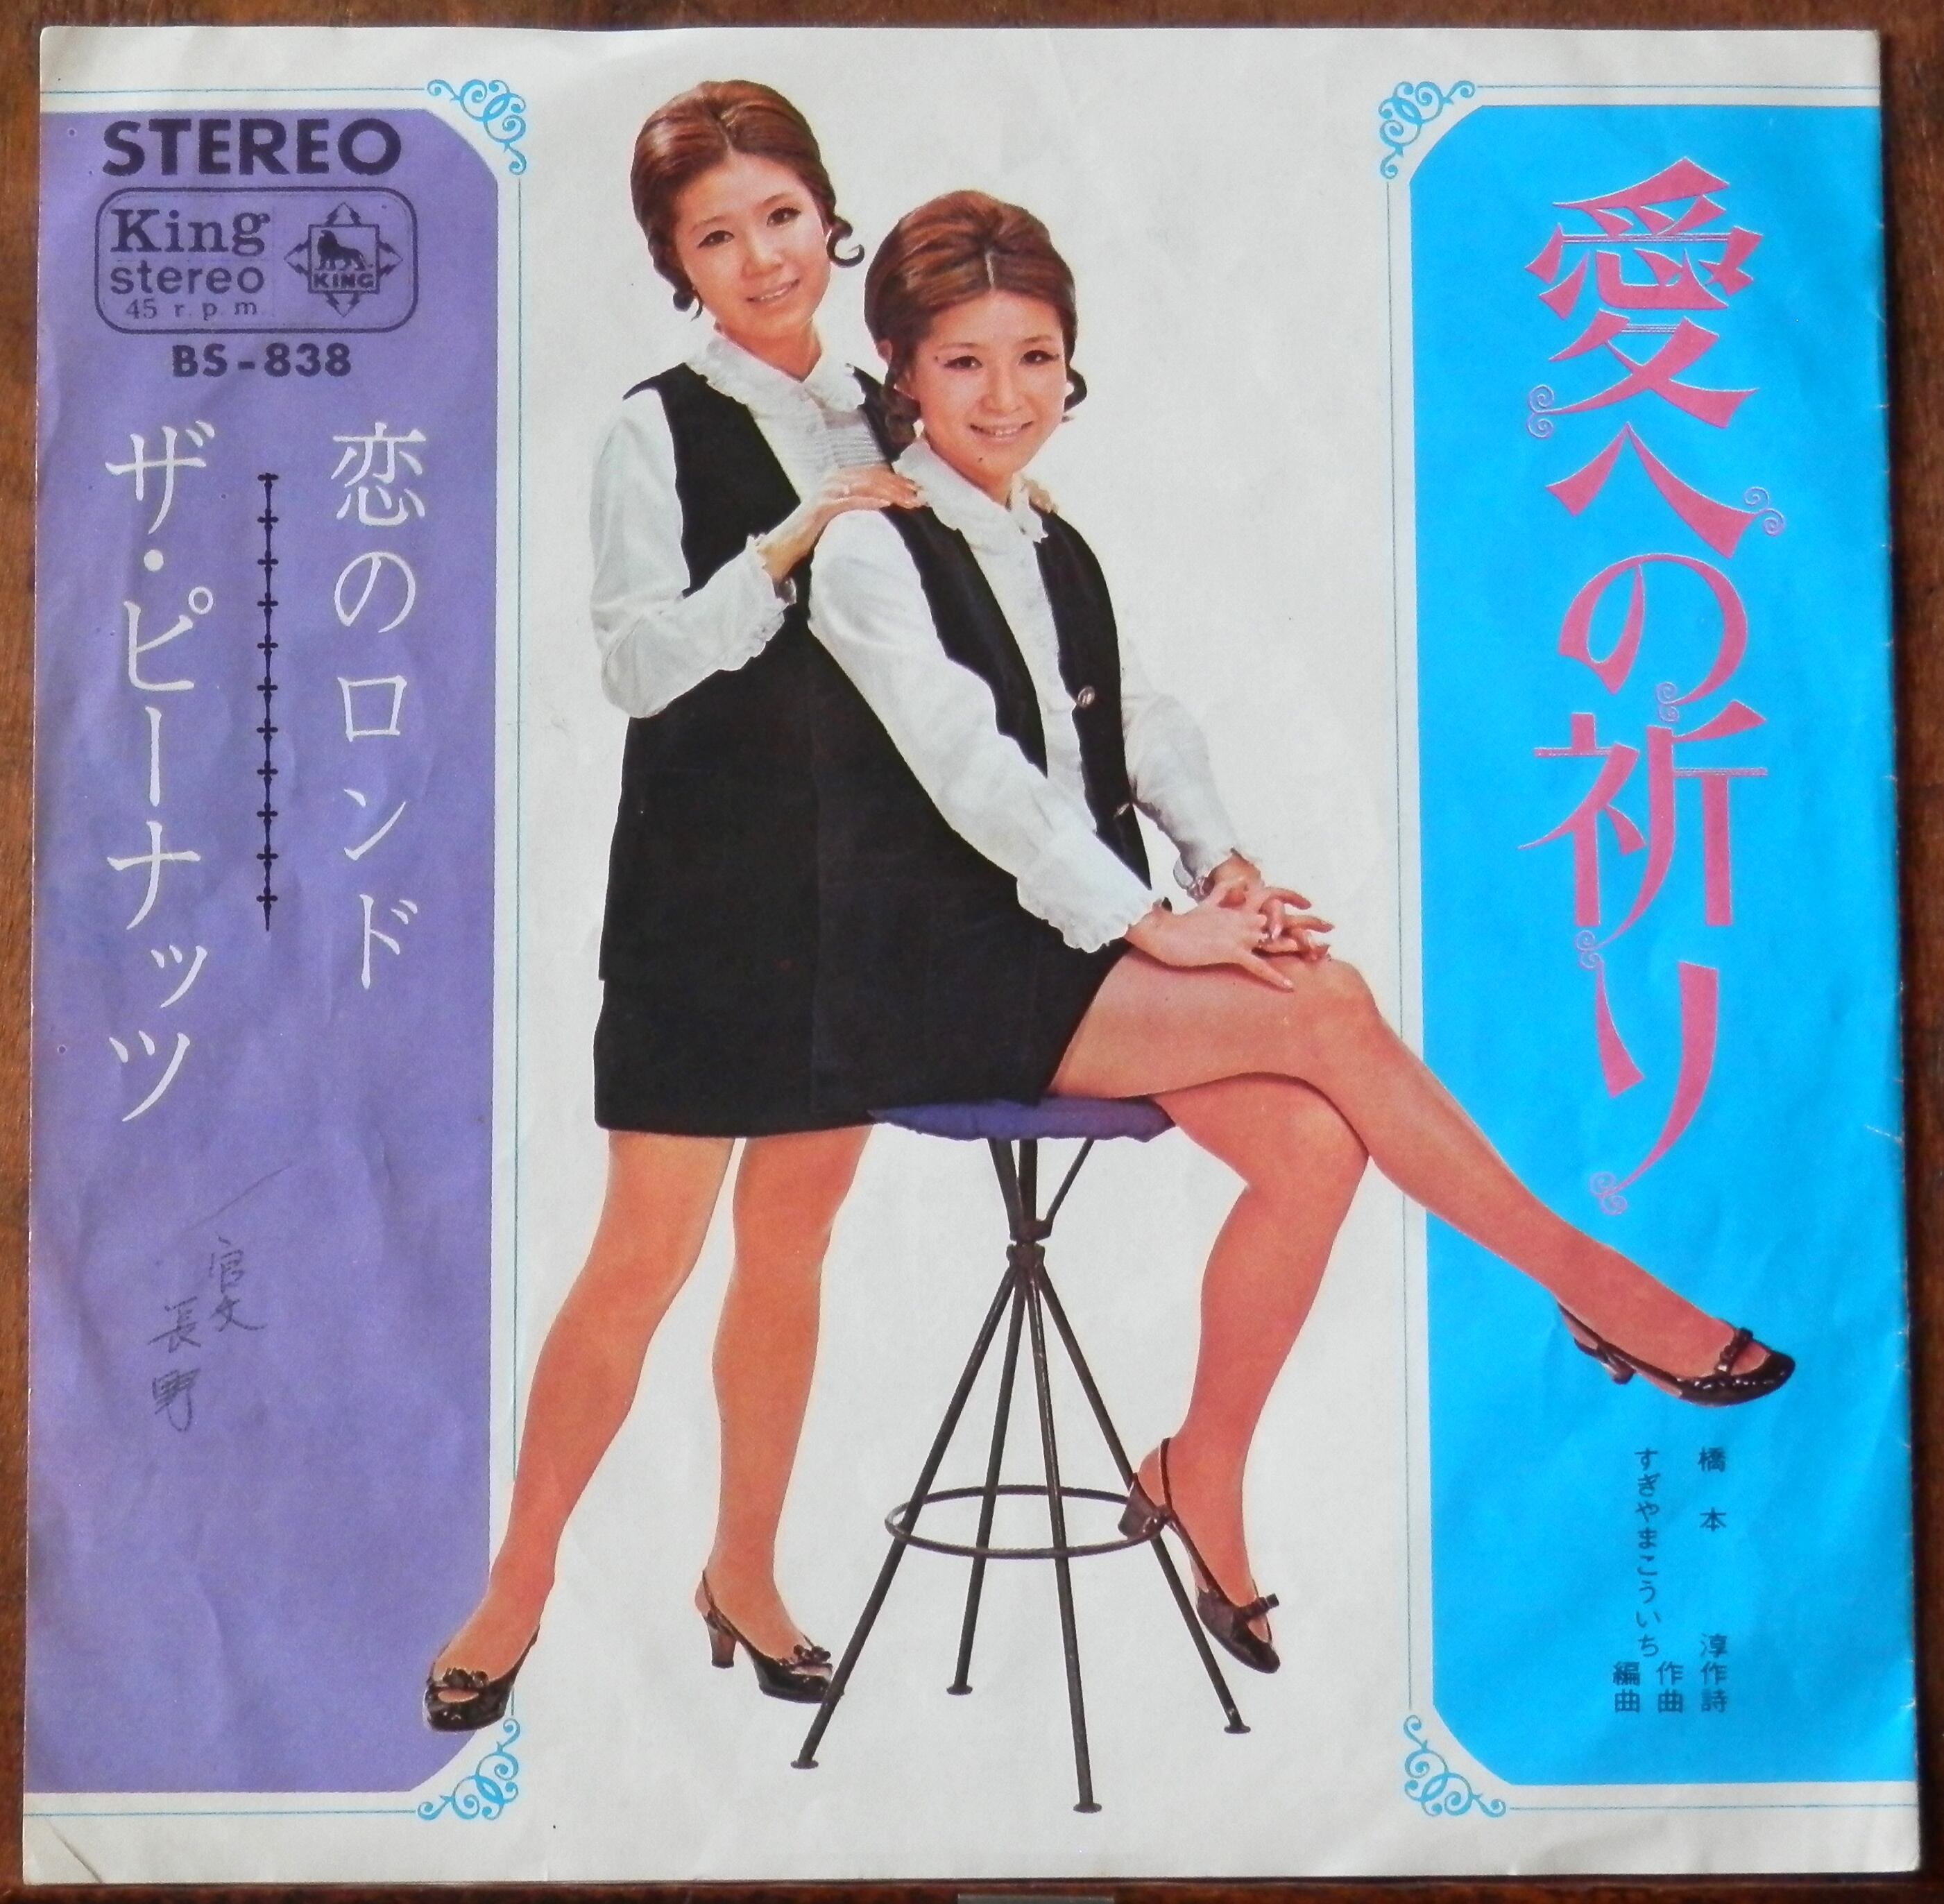 68【EP】ザ・ピーナッツ - 恋のロンド | 音盤窟レコード